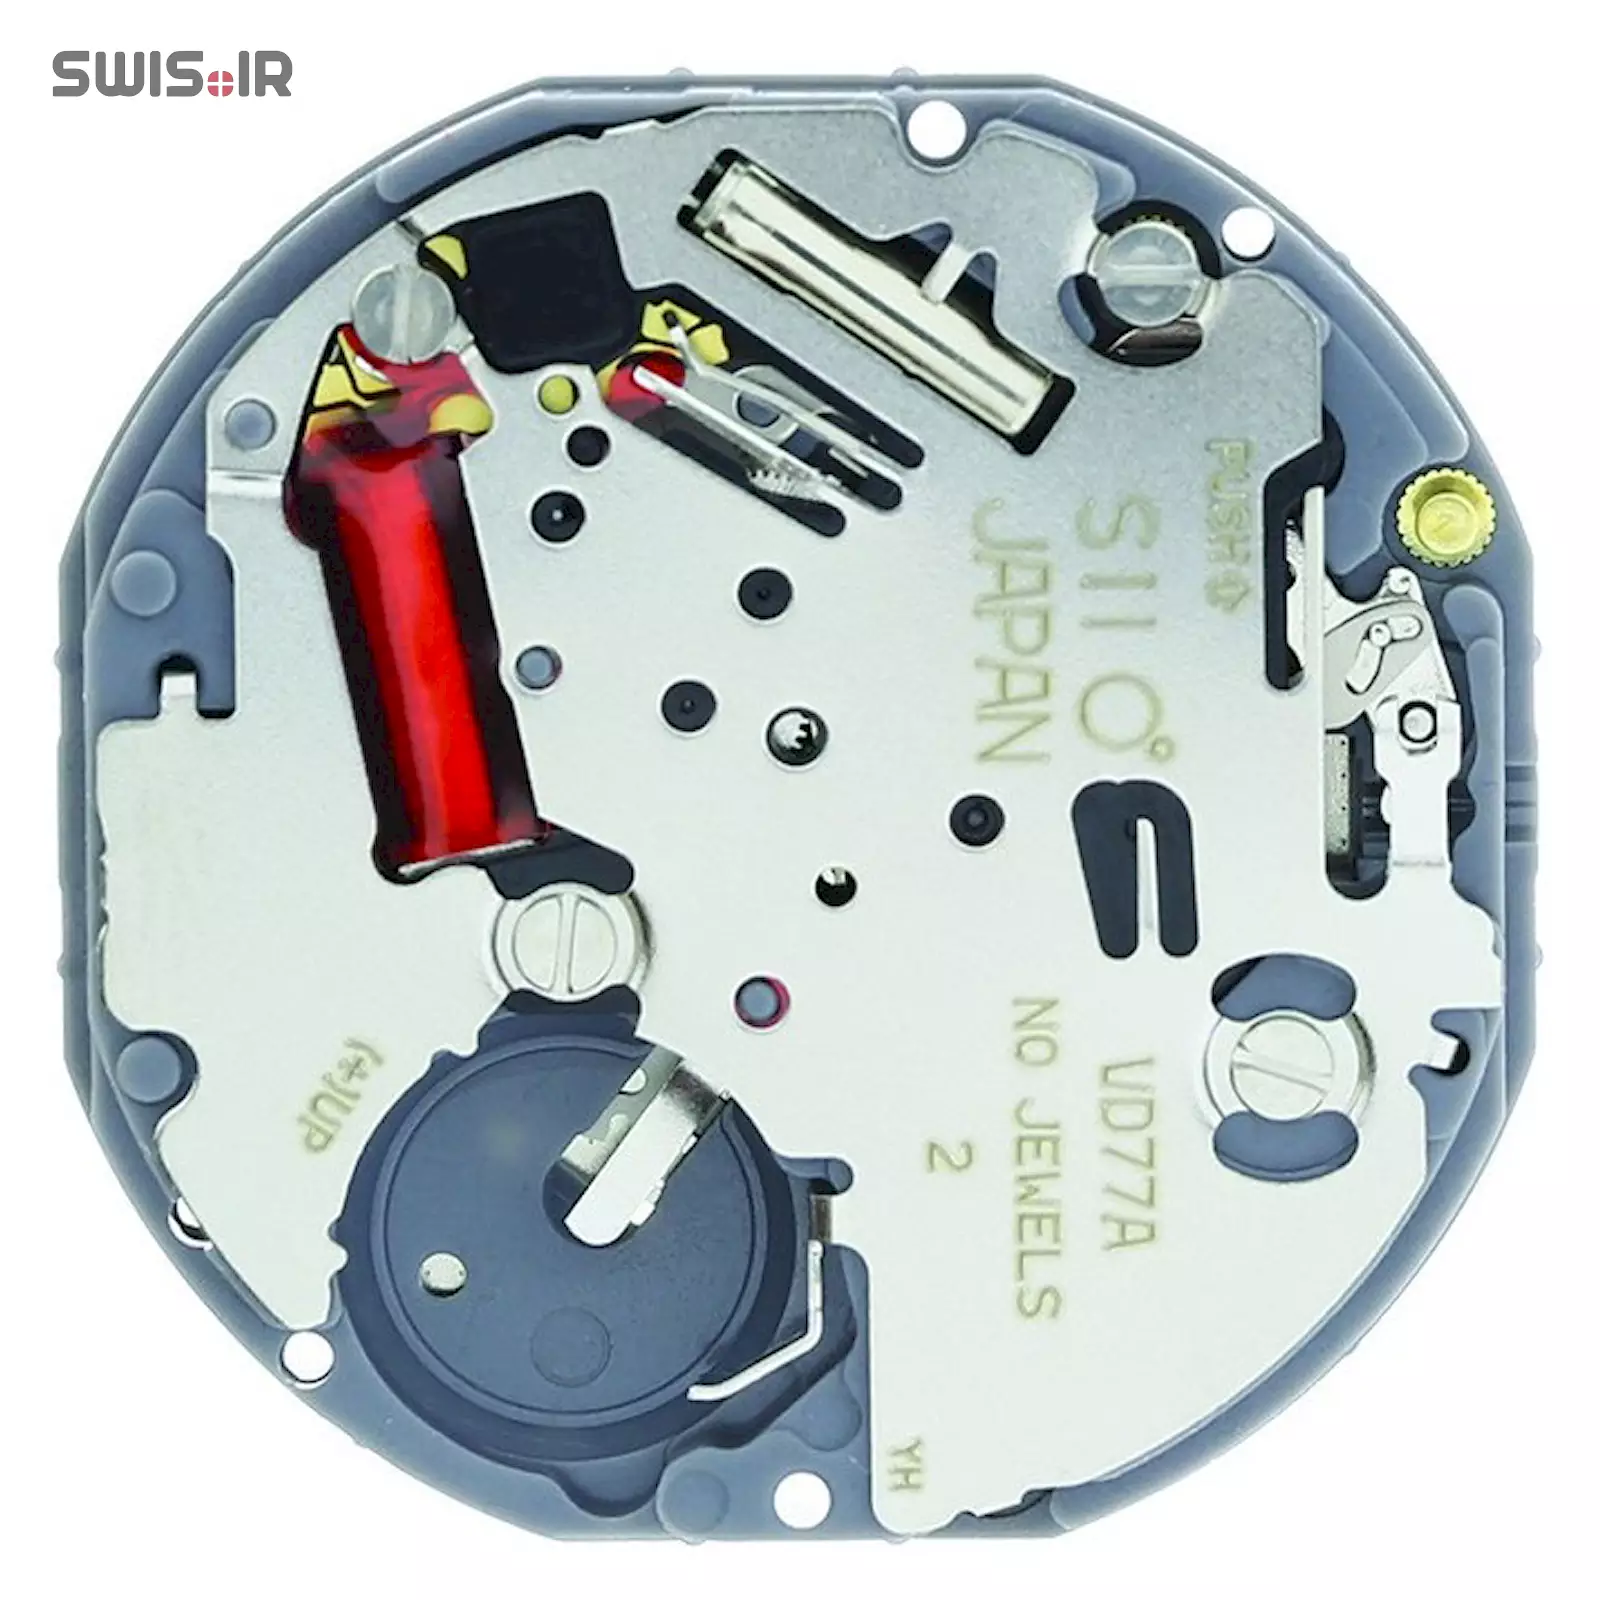 تصویر پشت موتور ساعت کالیبر VD77A-SII ساخت شرکت سیکو ـ اپسون ژاپن